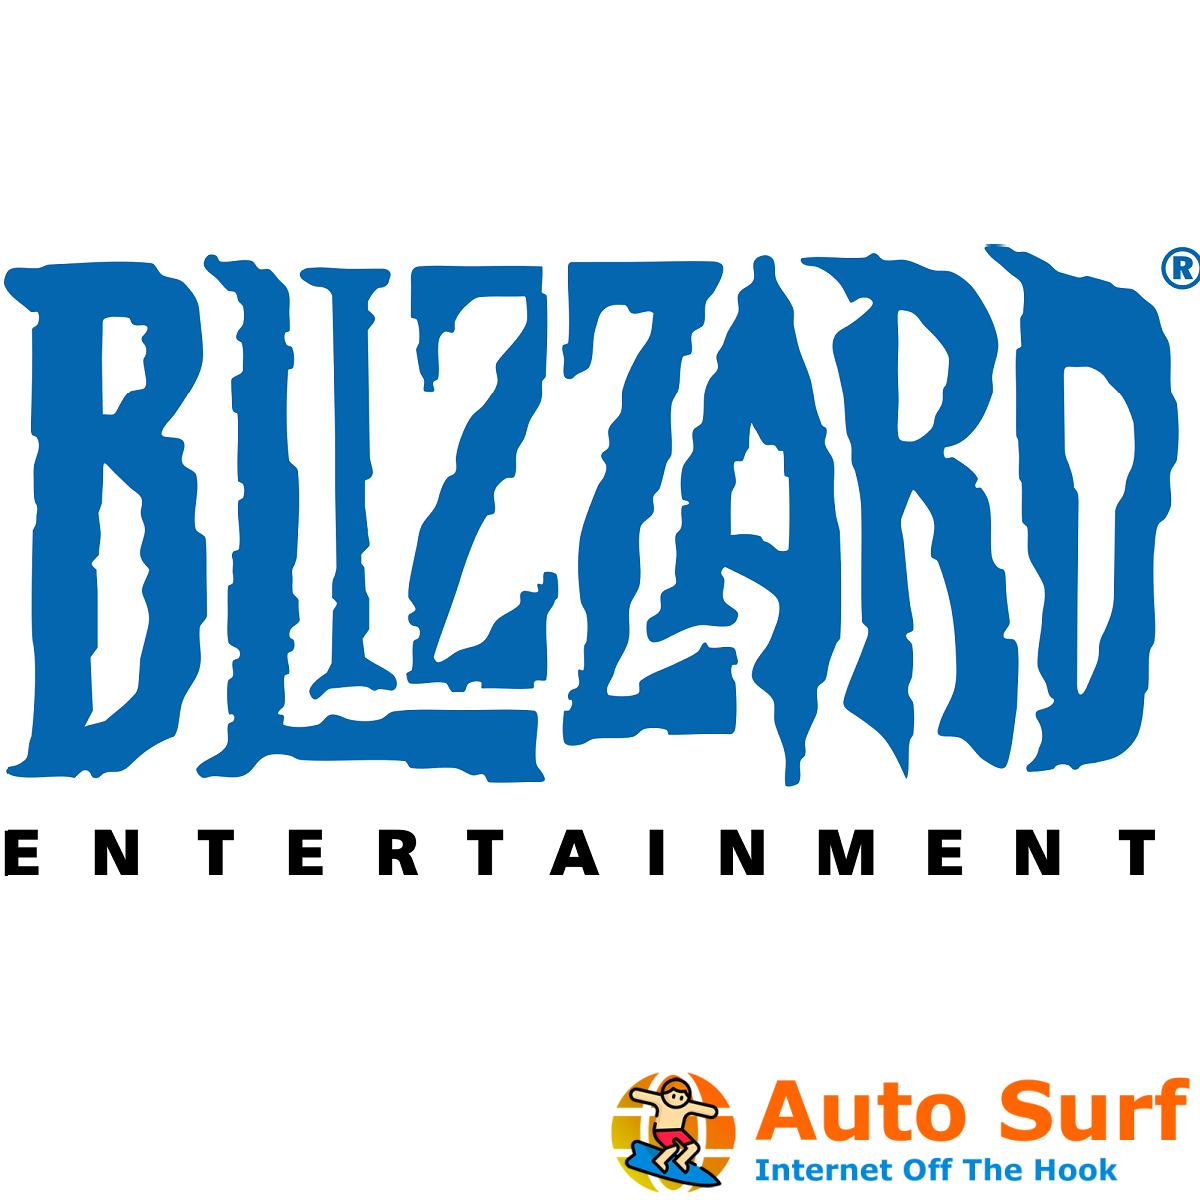 La aplicación Blizzard se atascó al inicializar